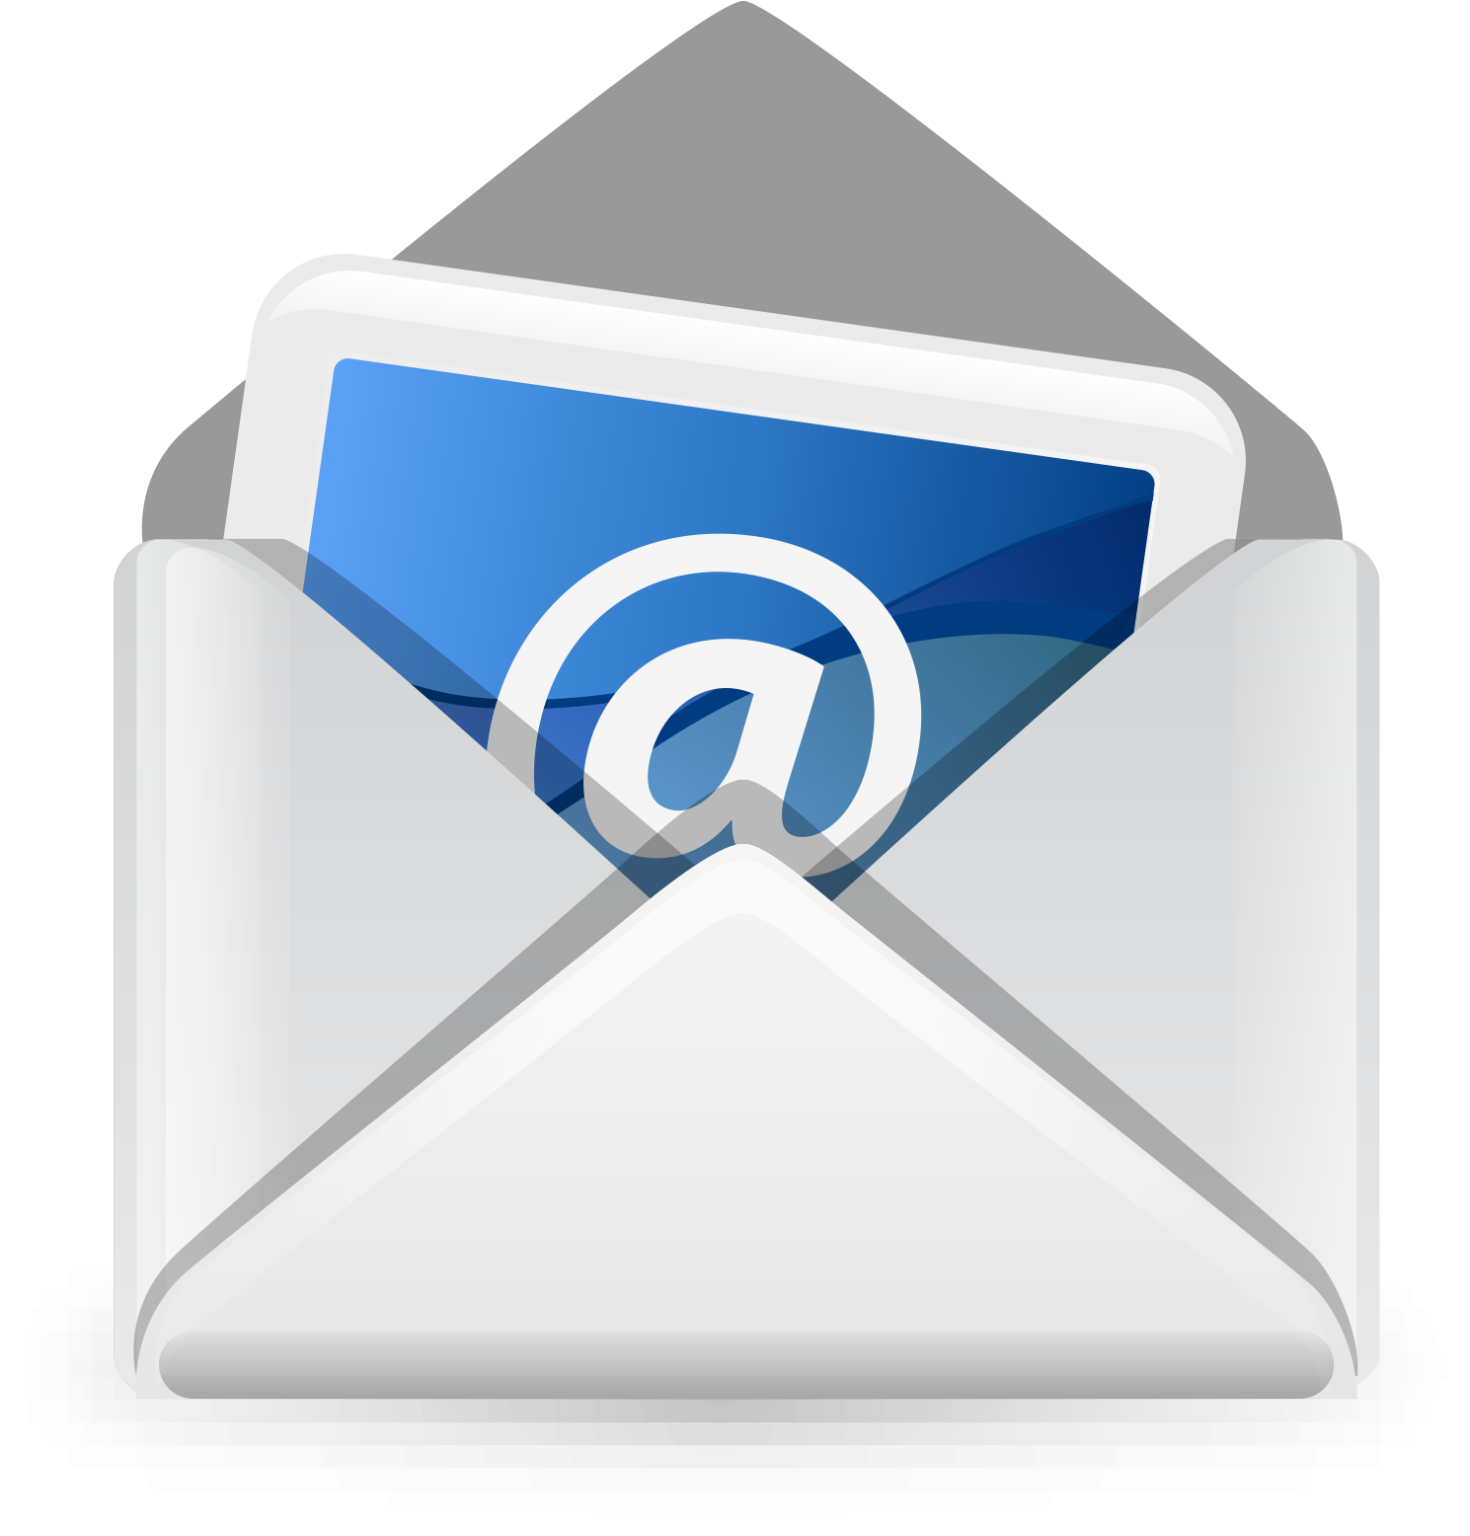 Picture mail. Электронная почта. Значок электронной почты. Значок почты без фона. Пиктограмма электронная почта.